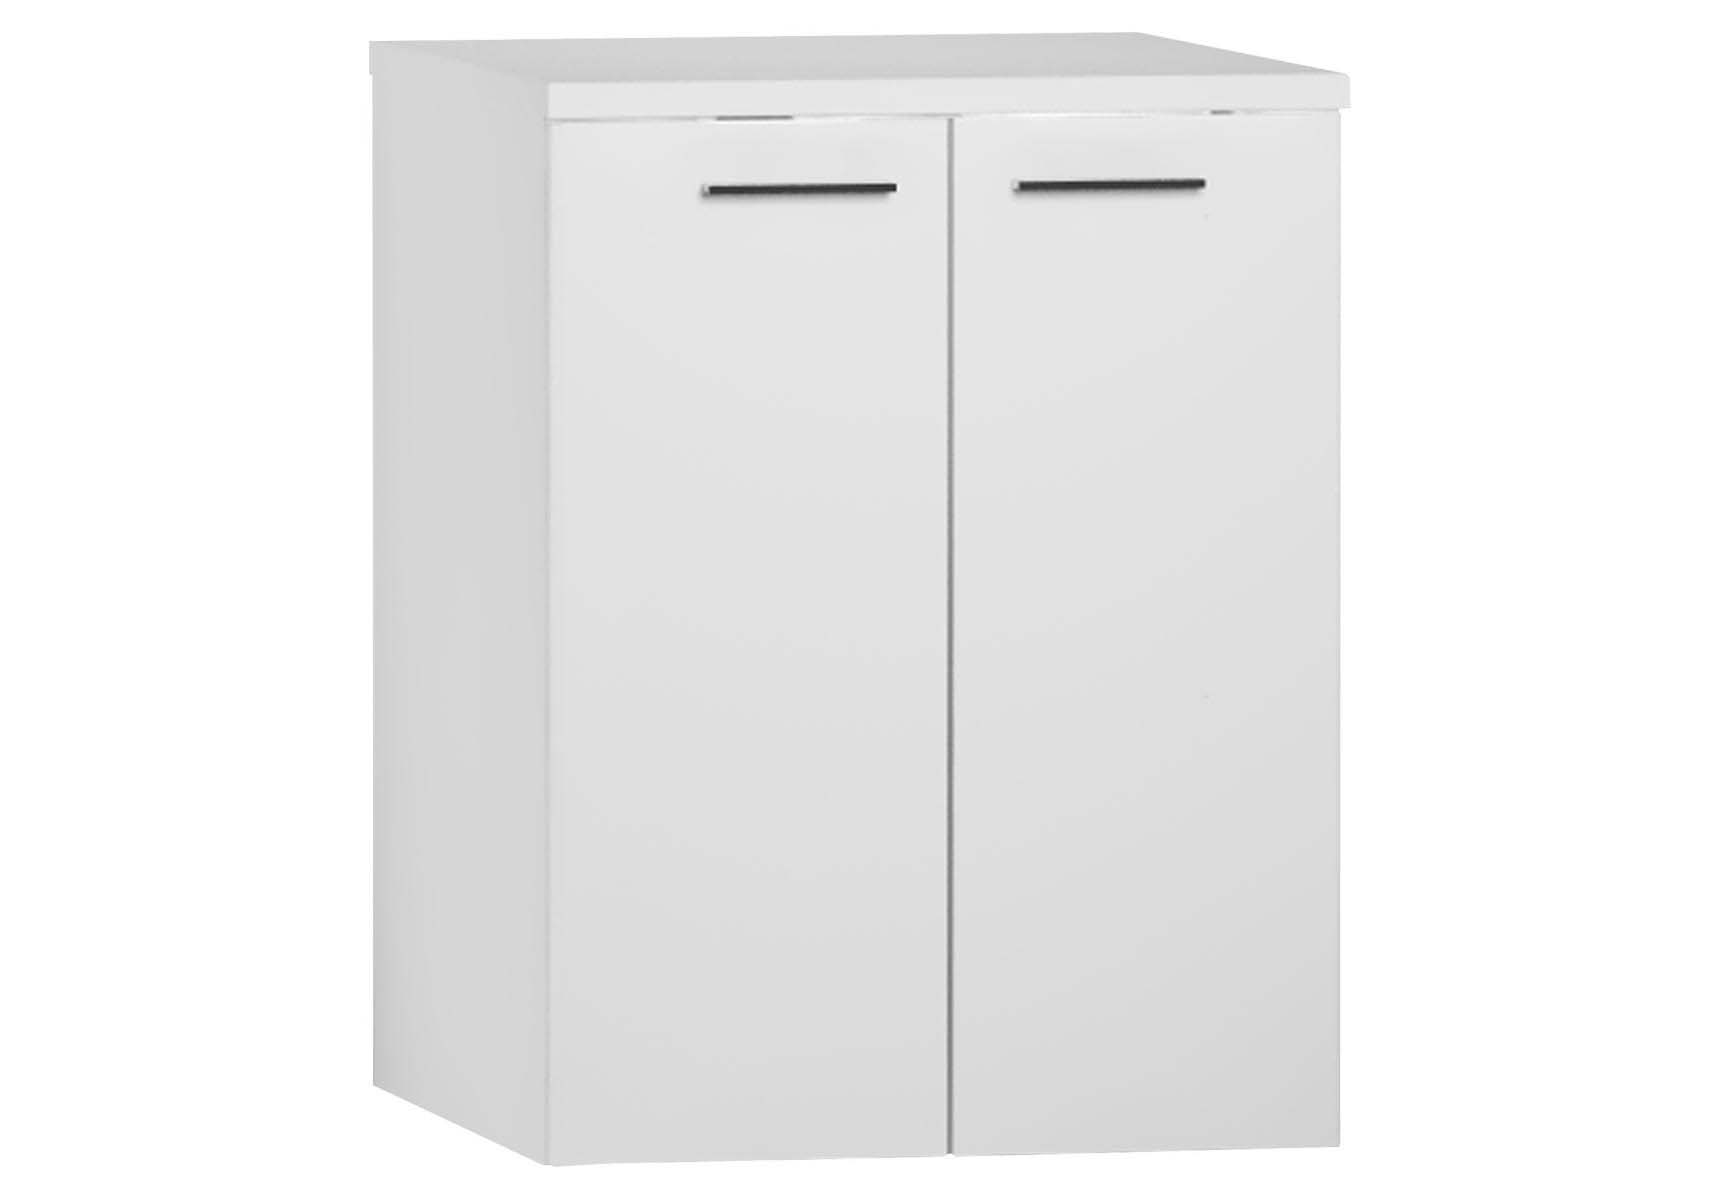 S20 Washing Machine Cabinet, White High Gloss